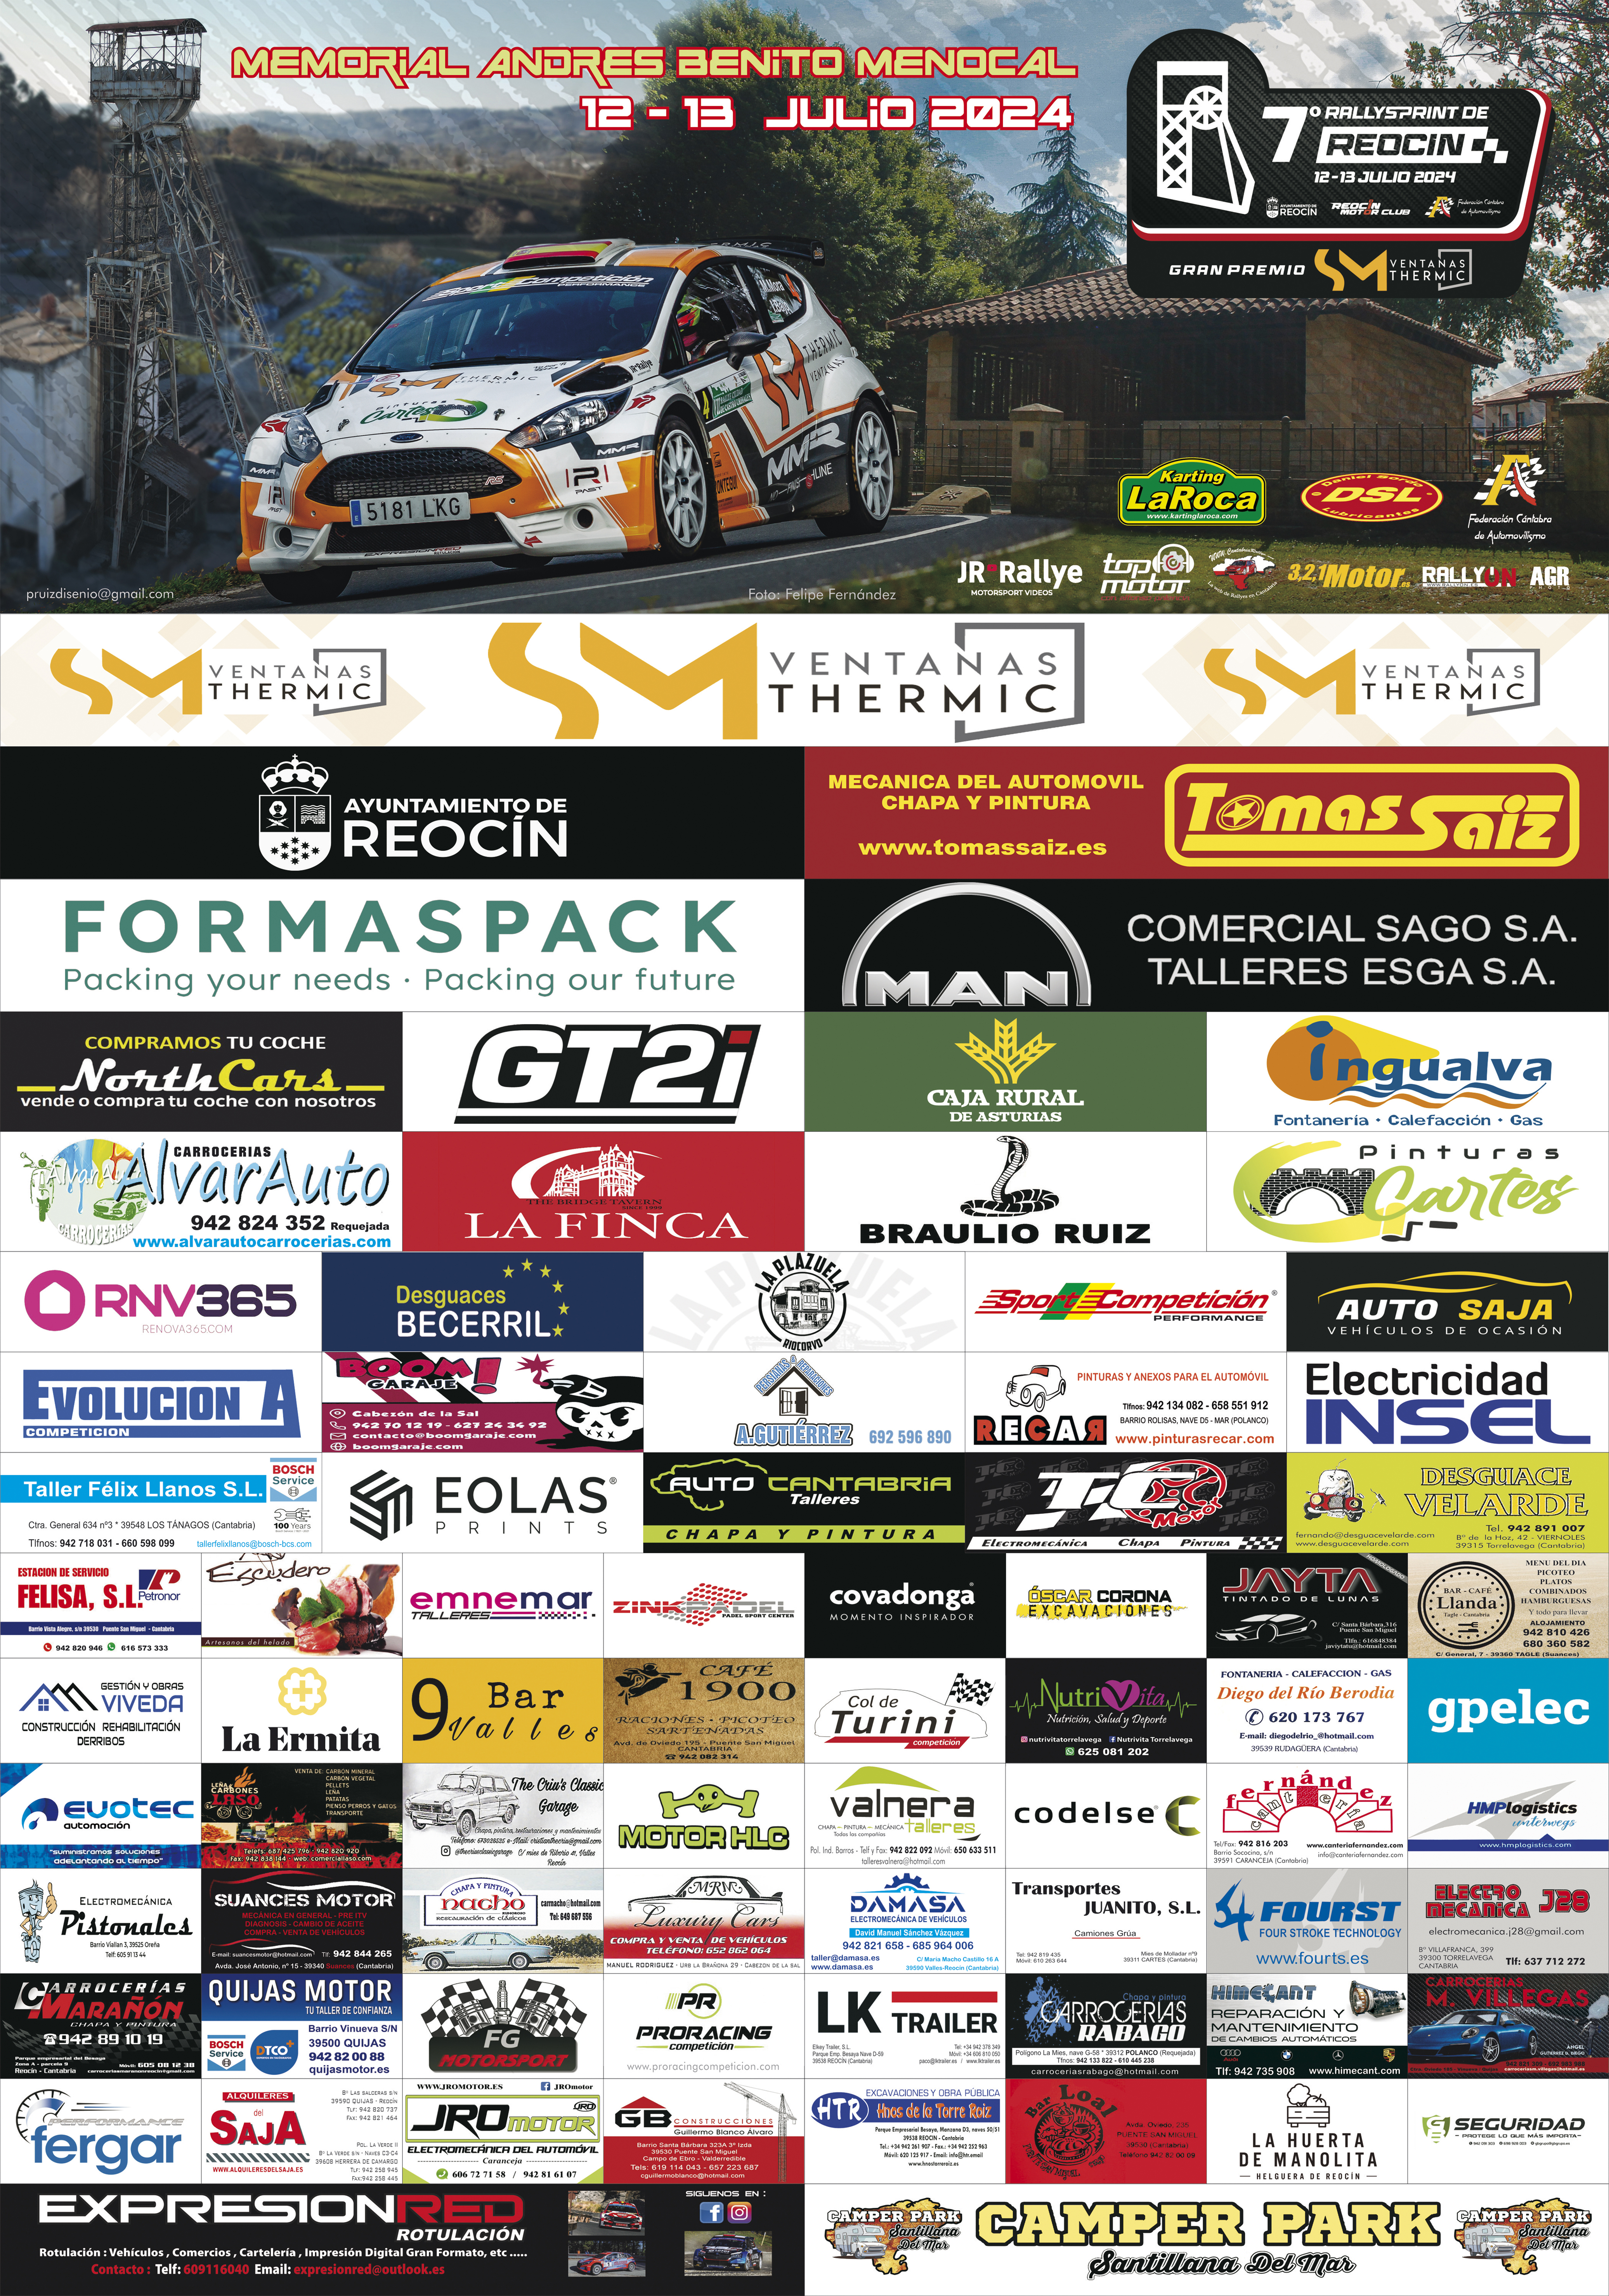 Segunda prueba del campeonato de Cantabria de Rallysprint 